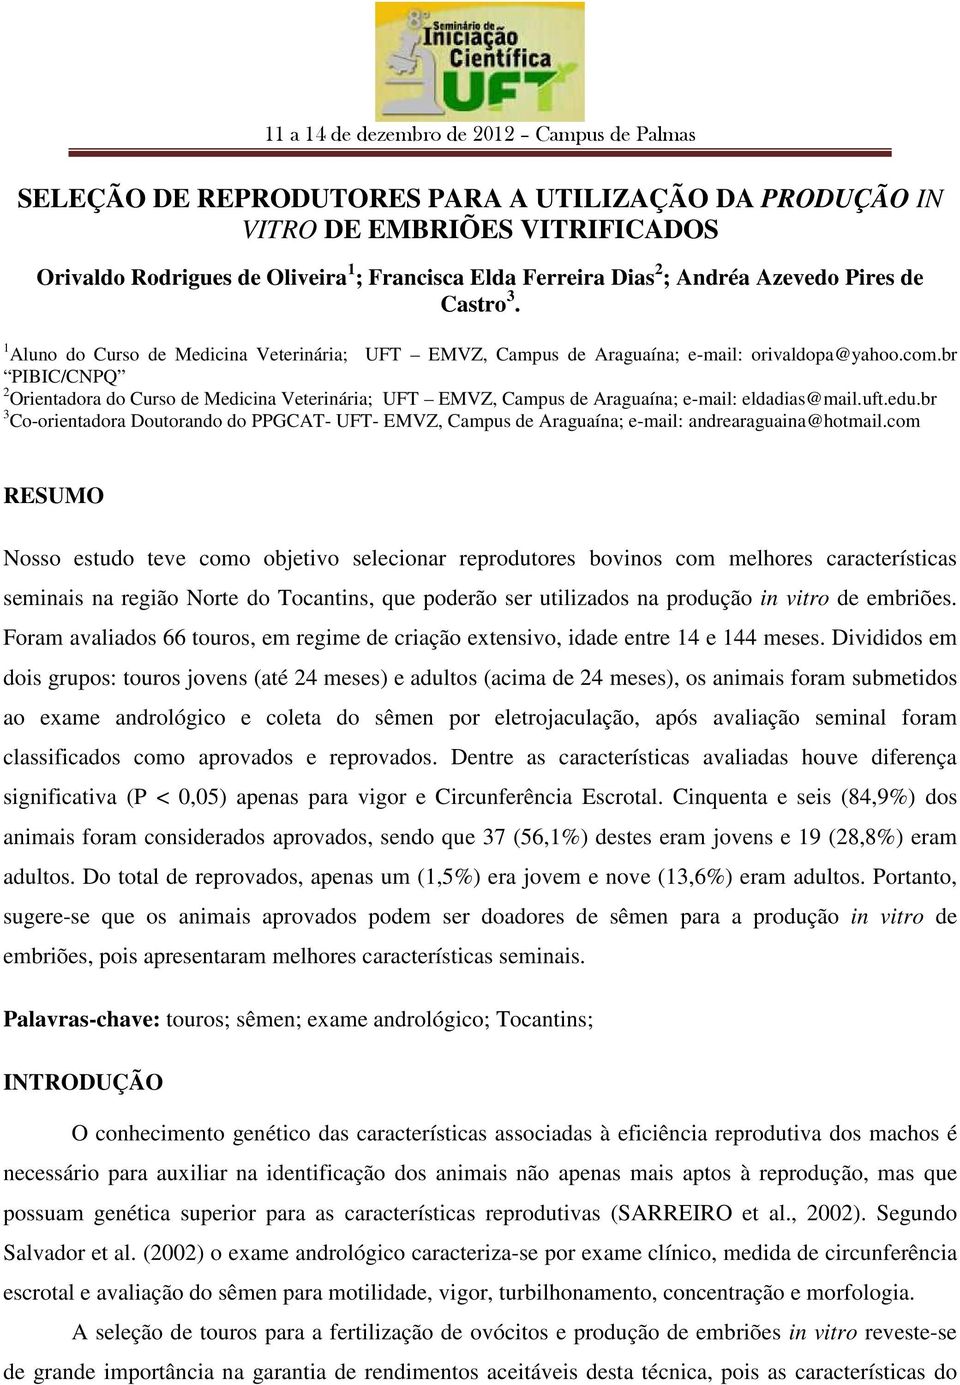 br PIBIC/CNPQ 2 Orientadora do Curso de Medicina Veterinária; UFT EMVZ, Campus de Araguaína; e-mail: eldadias@mail.uft.edu.